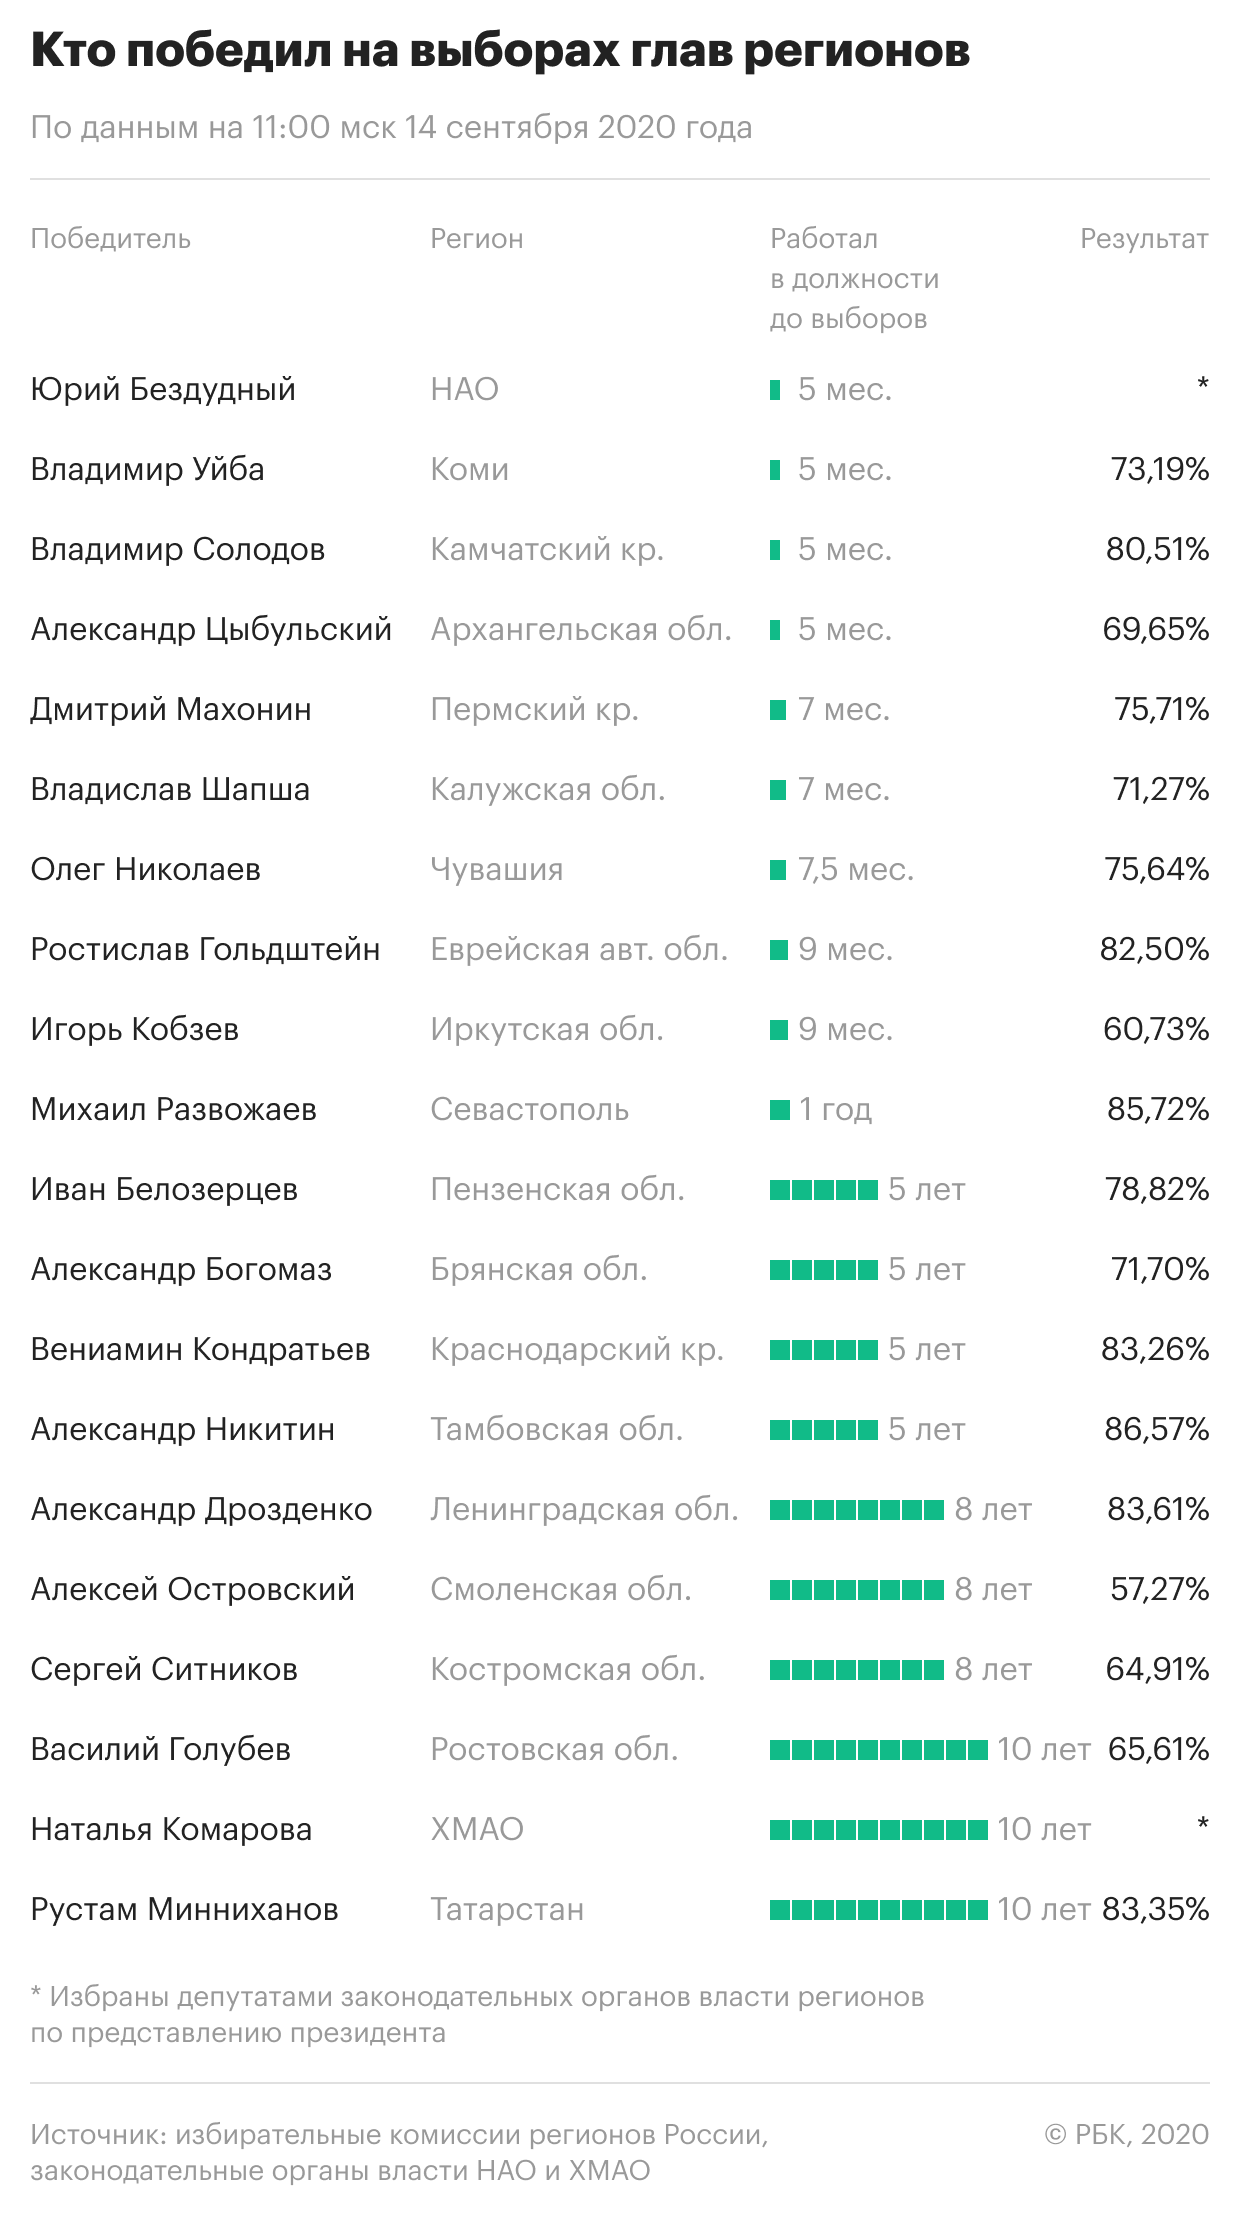 Итоги выборов губернаторов в России в 2020 году. Инфографика